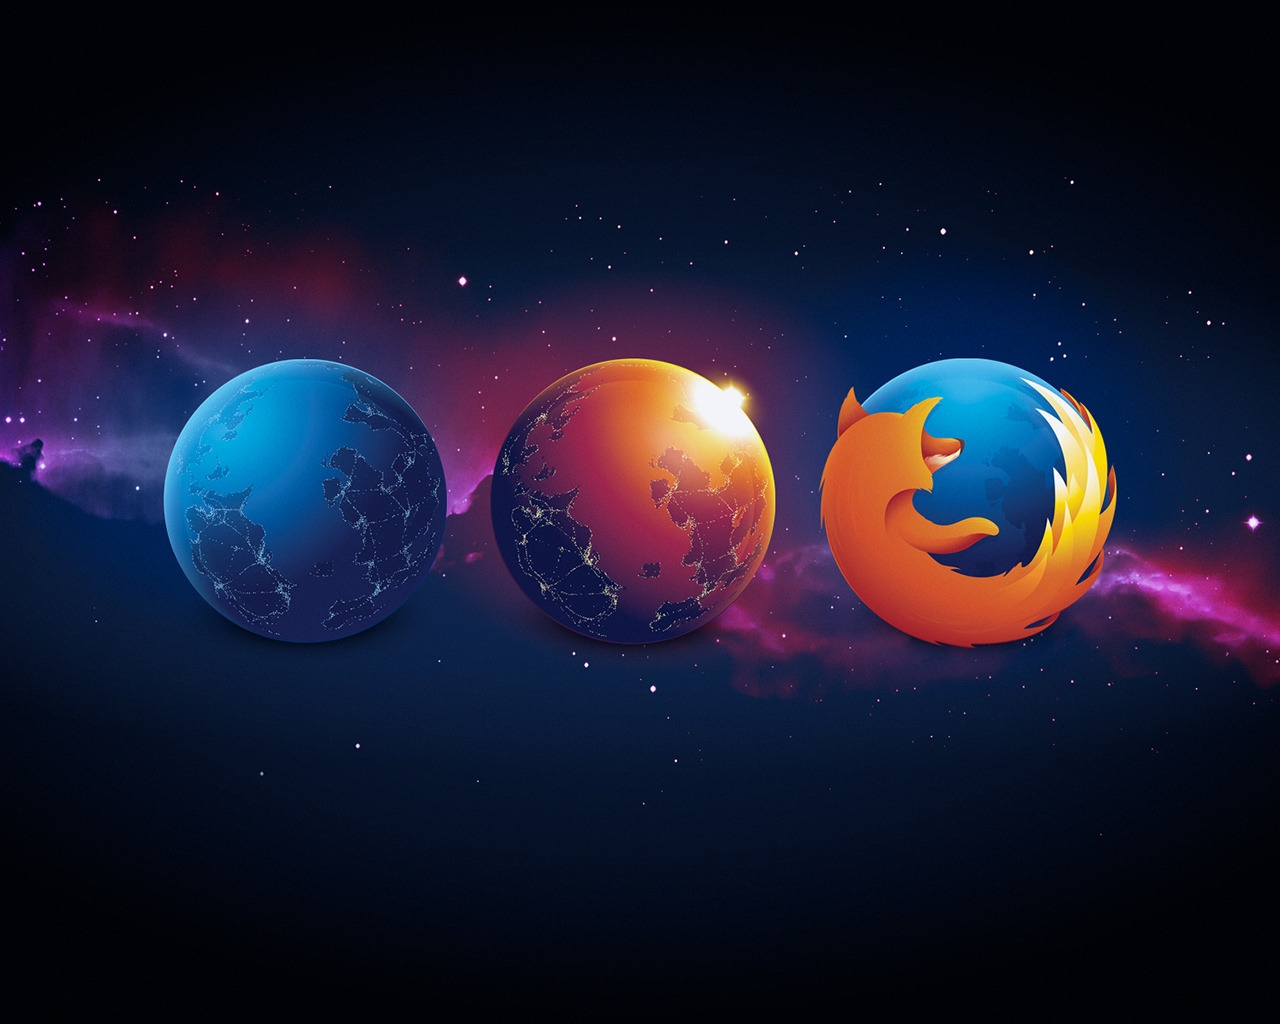 Firefox Nightly Aurora for 1280 x 1024 resolution